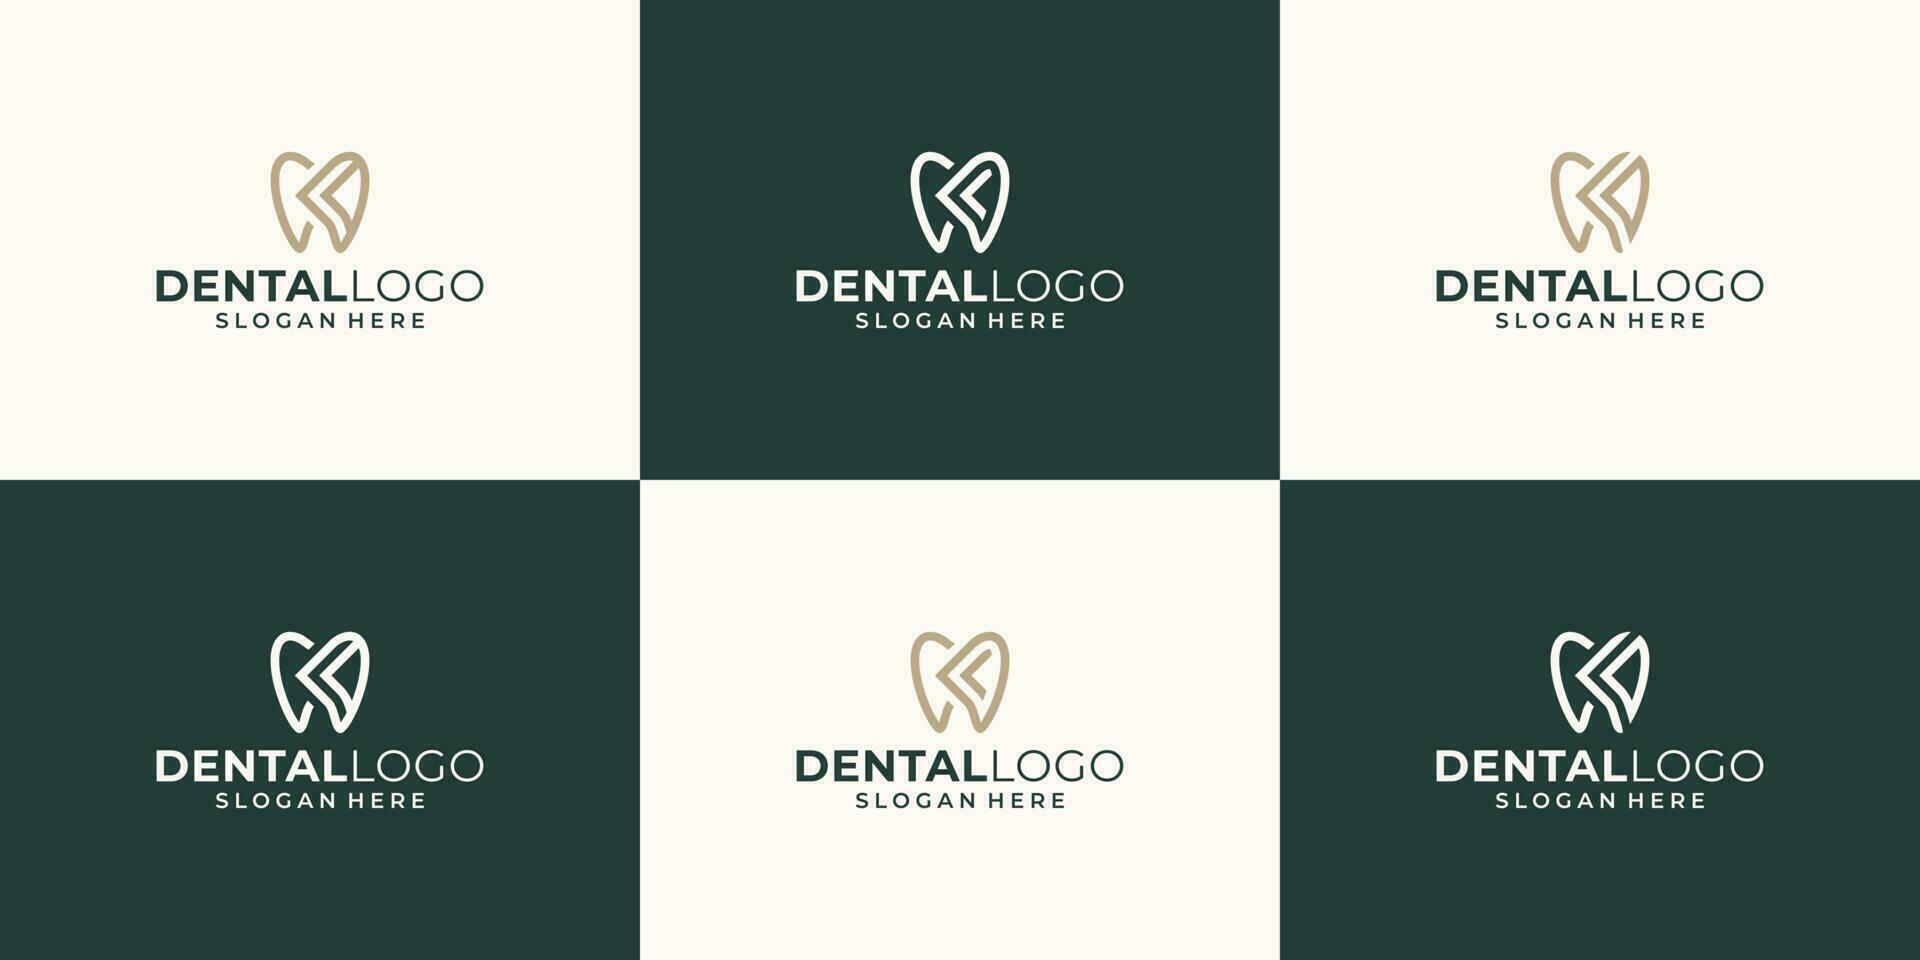 verzameling tandheelkunde kliniek logo ontwerp met meetkundig lijn abstract tandheelkundig logo en initialen brief k abstract vector illustrator ontwerp.